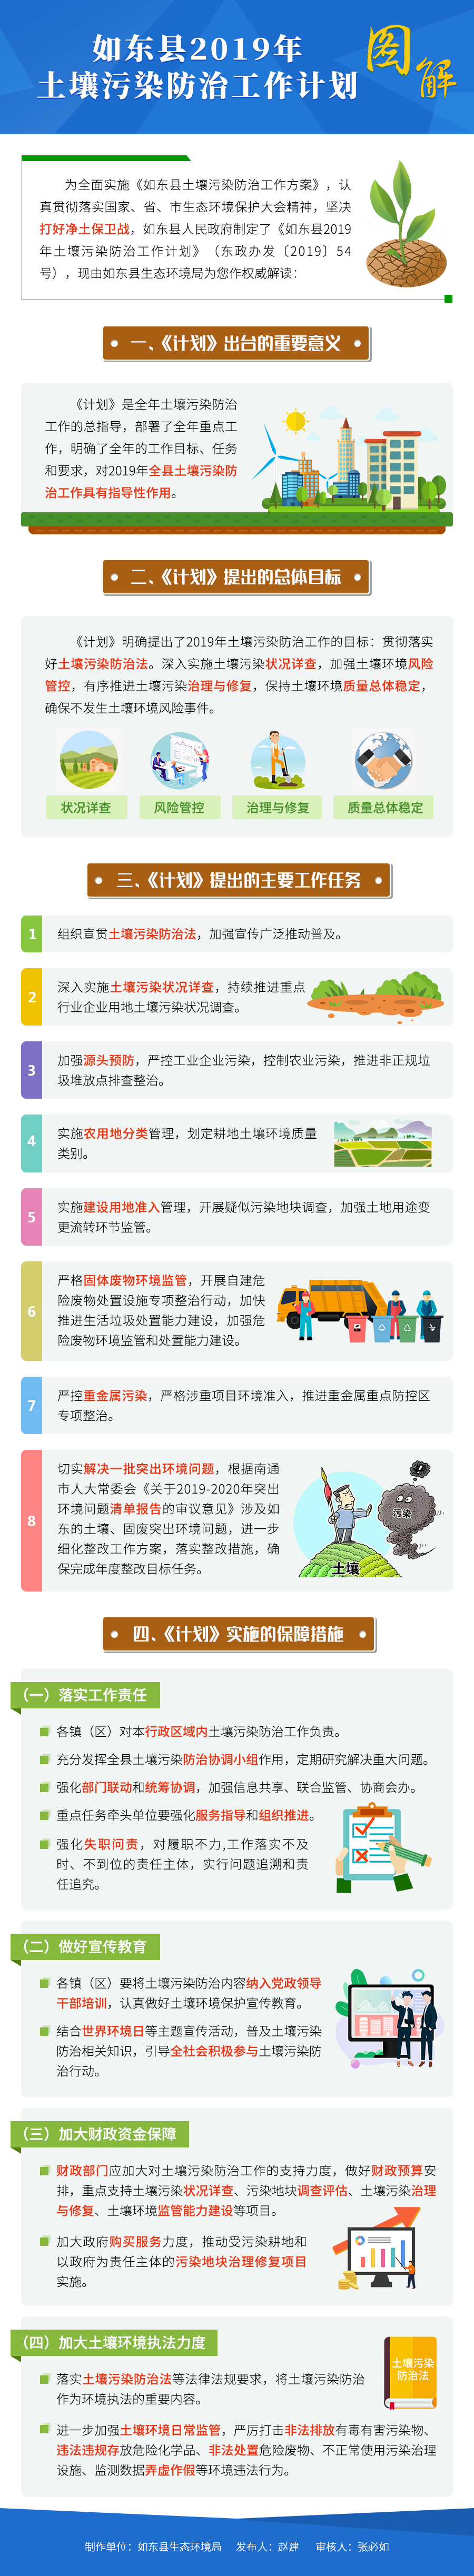 如东县2019年土壤污染防治工作计划图解.png